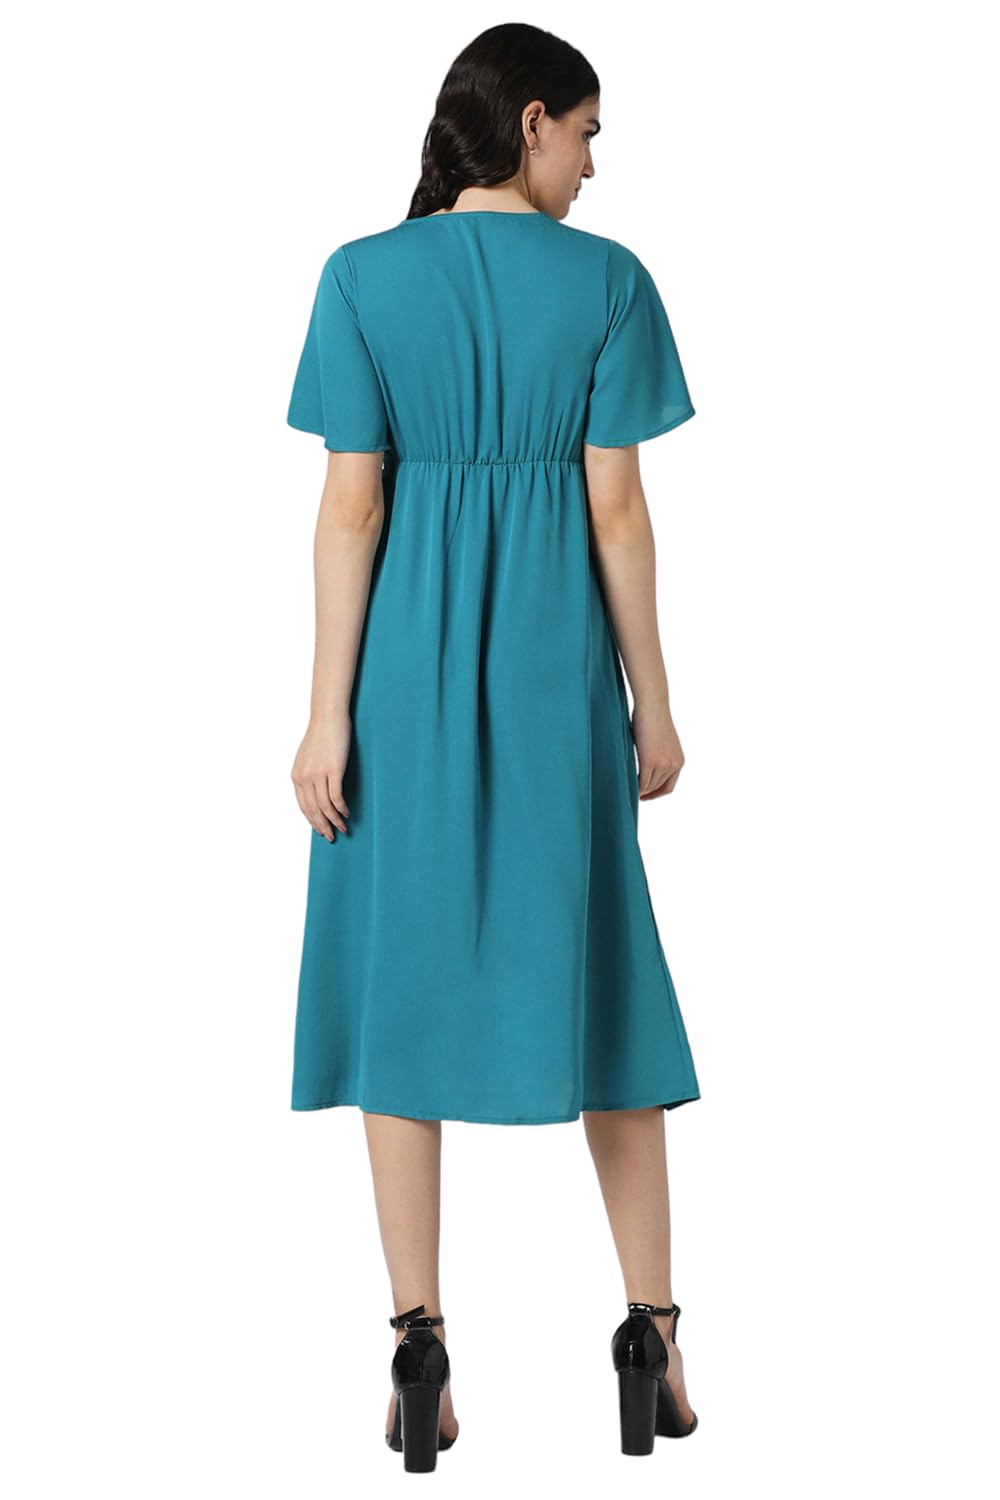 Van Heusen Women's Polyester Asymmetrical Calf Length Dress (VWDRFRGFQ86407_Blue